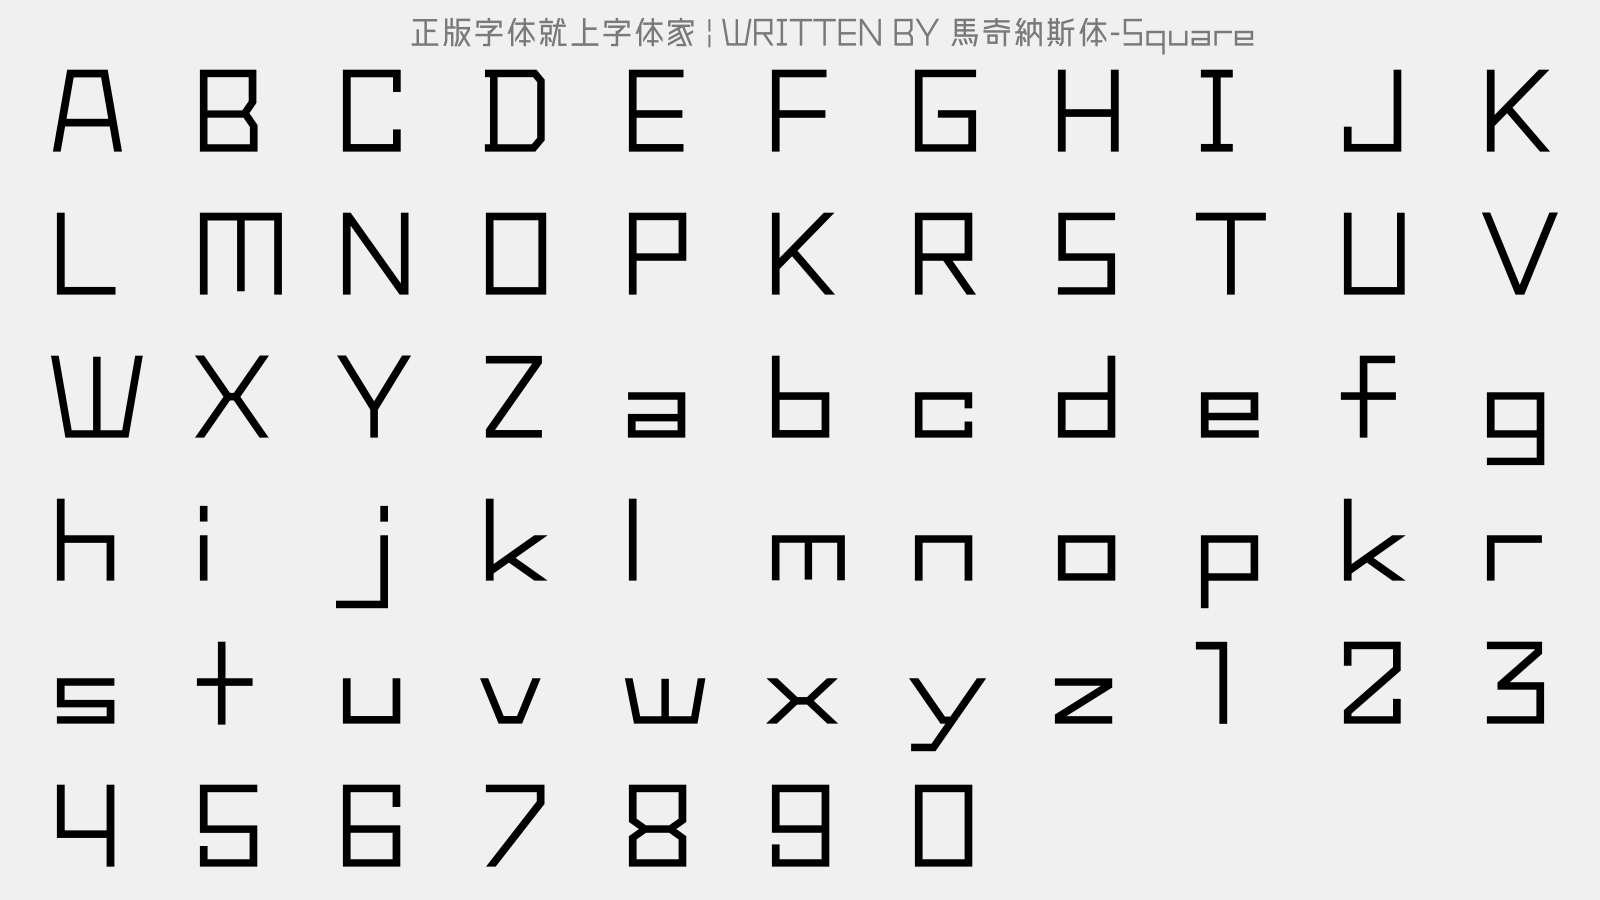 马奇纳斯体-Square - 大写字母/小写字母/数字